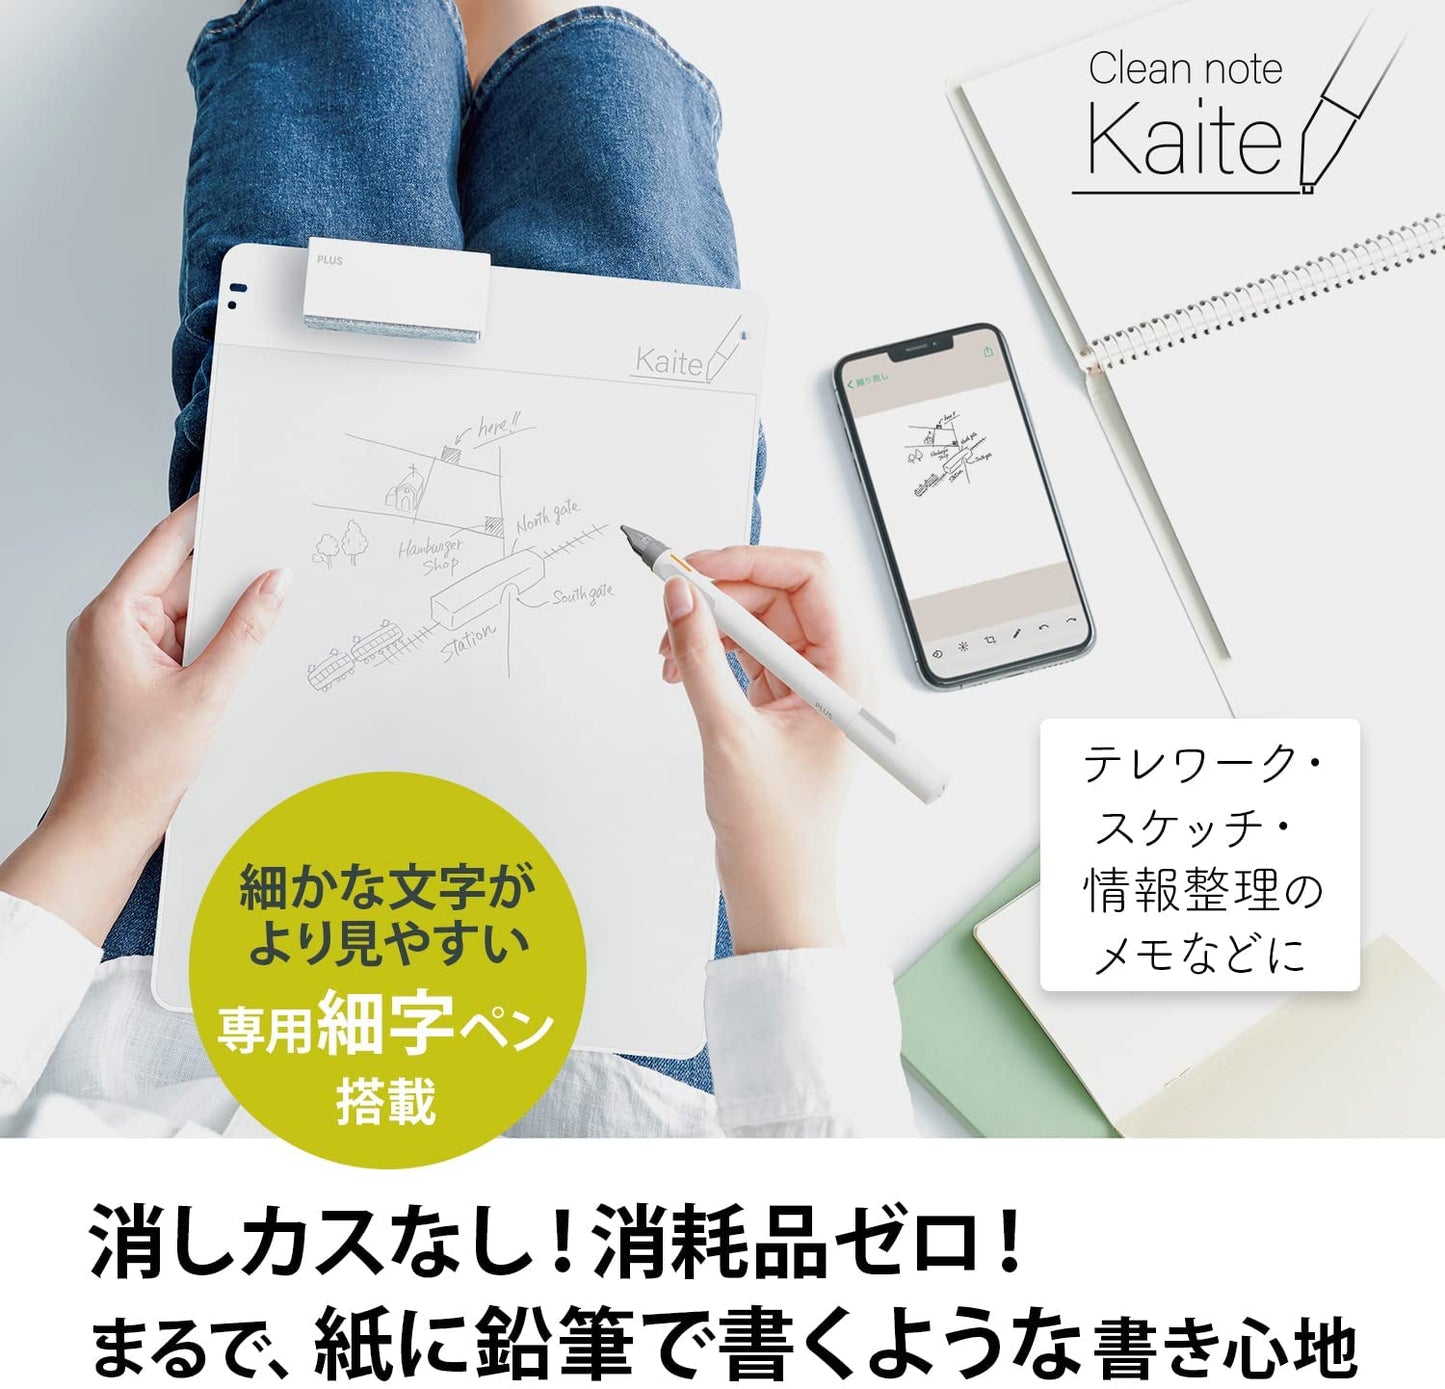 Kaite 2S 2022 – Ultra-White 13.3 Note Taking Slate